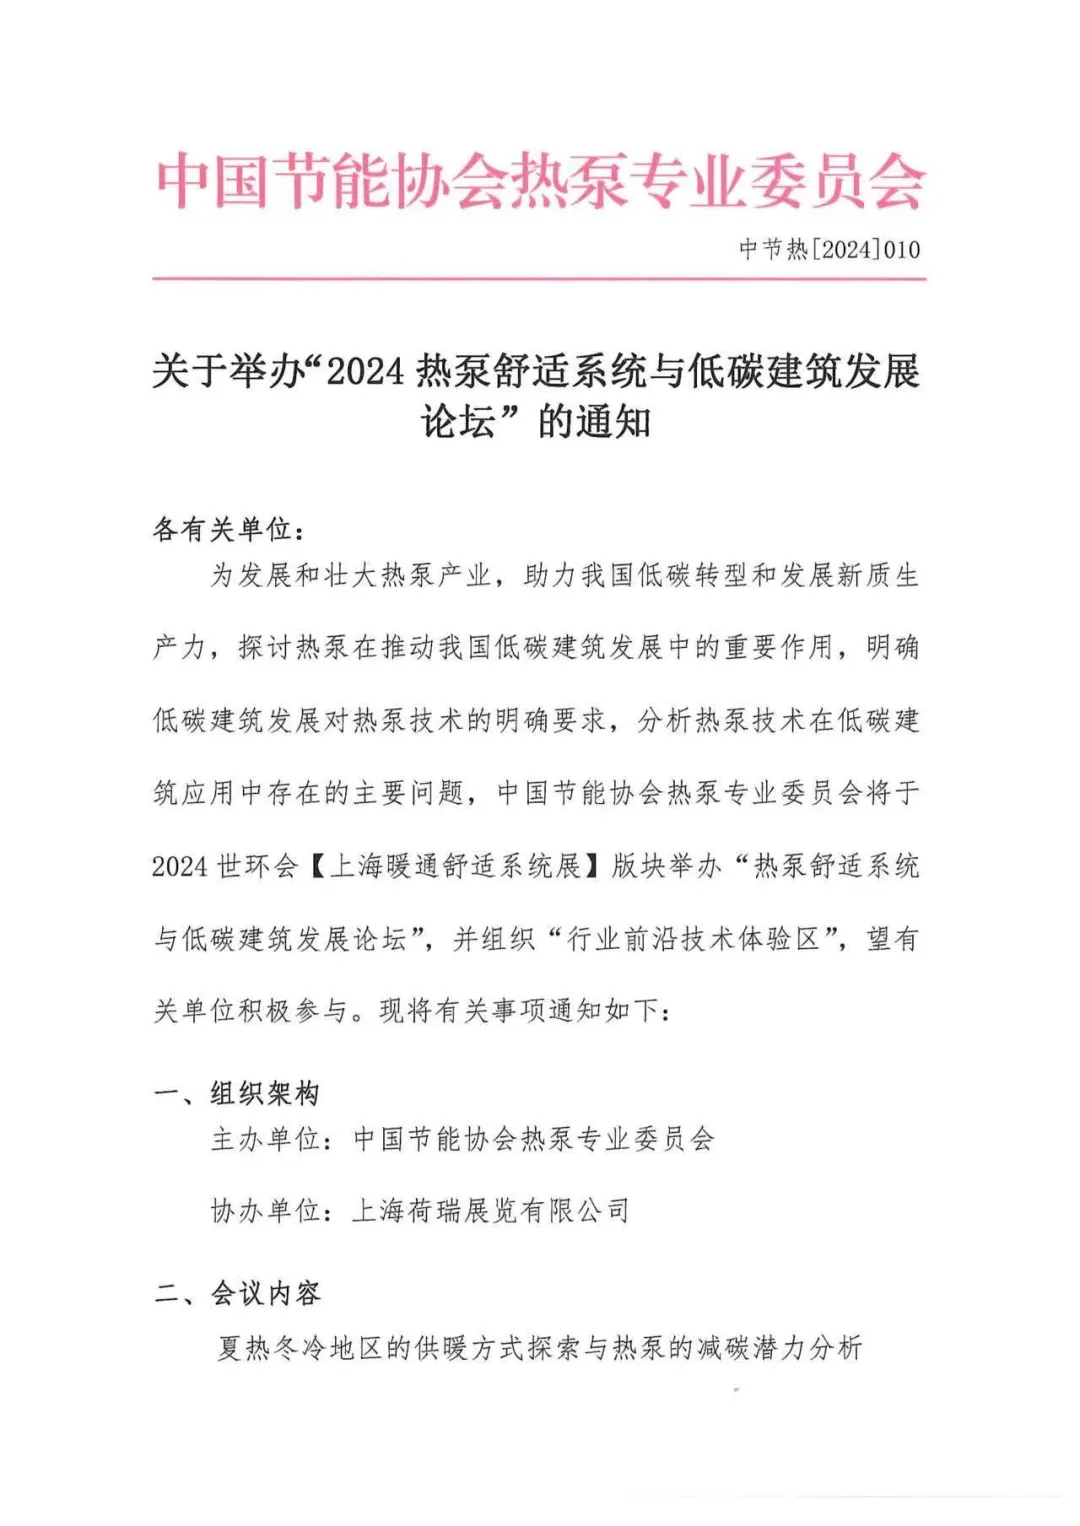 关于举办“2024热泵舒适系统与低碳建筑发展论坛”的通知-_上海舒适系统展